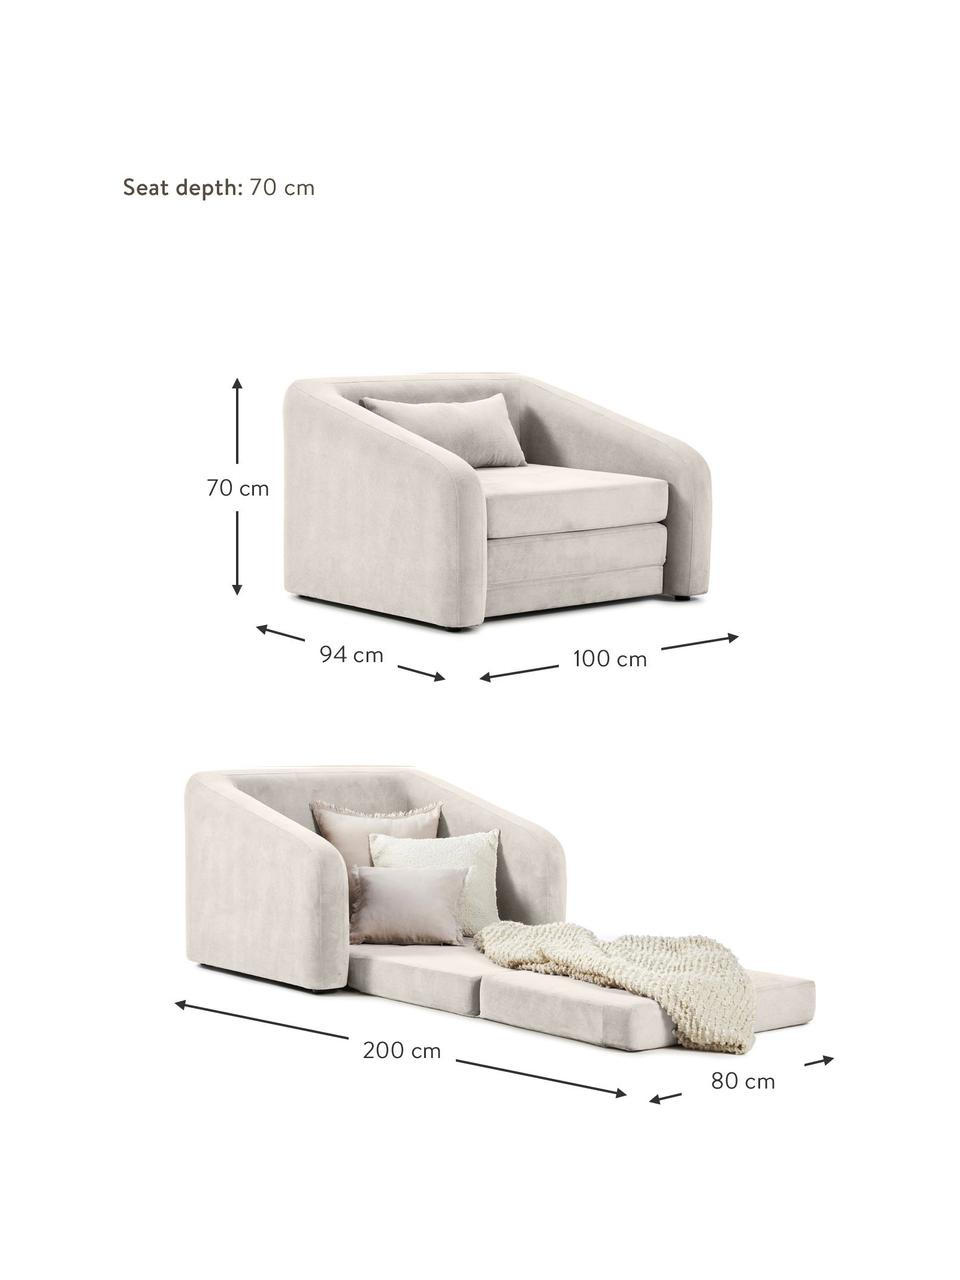 Fotel rozkładany Eliot, Tapicerka: 88% poliester, 12% nylon , Nogi: tworzywo sztuczne, Jasnoszara tkanina, S 100 x W 70 cm